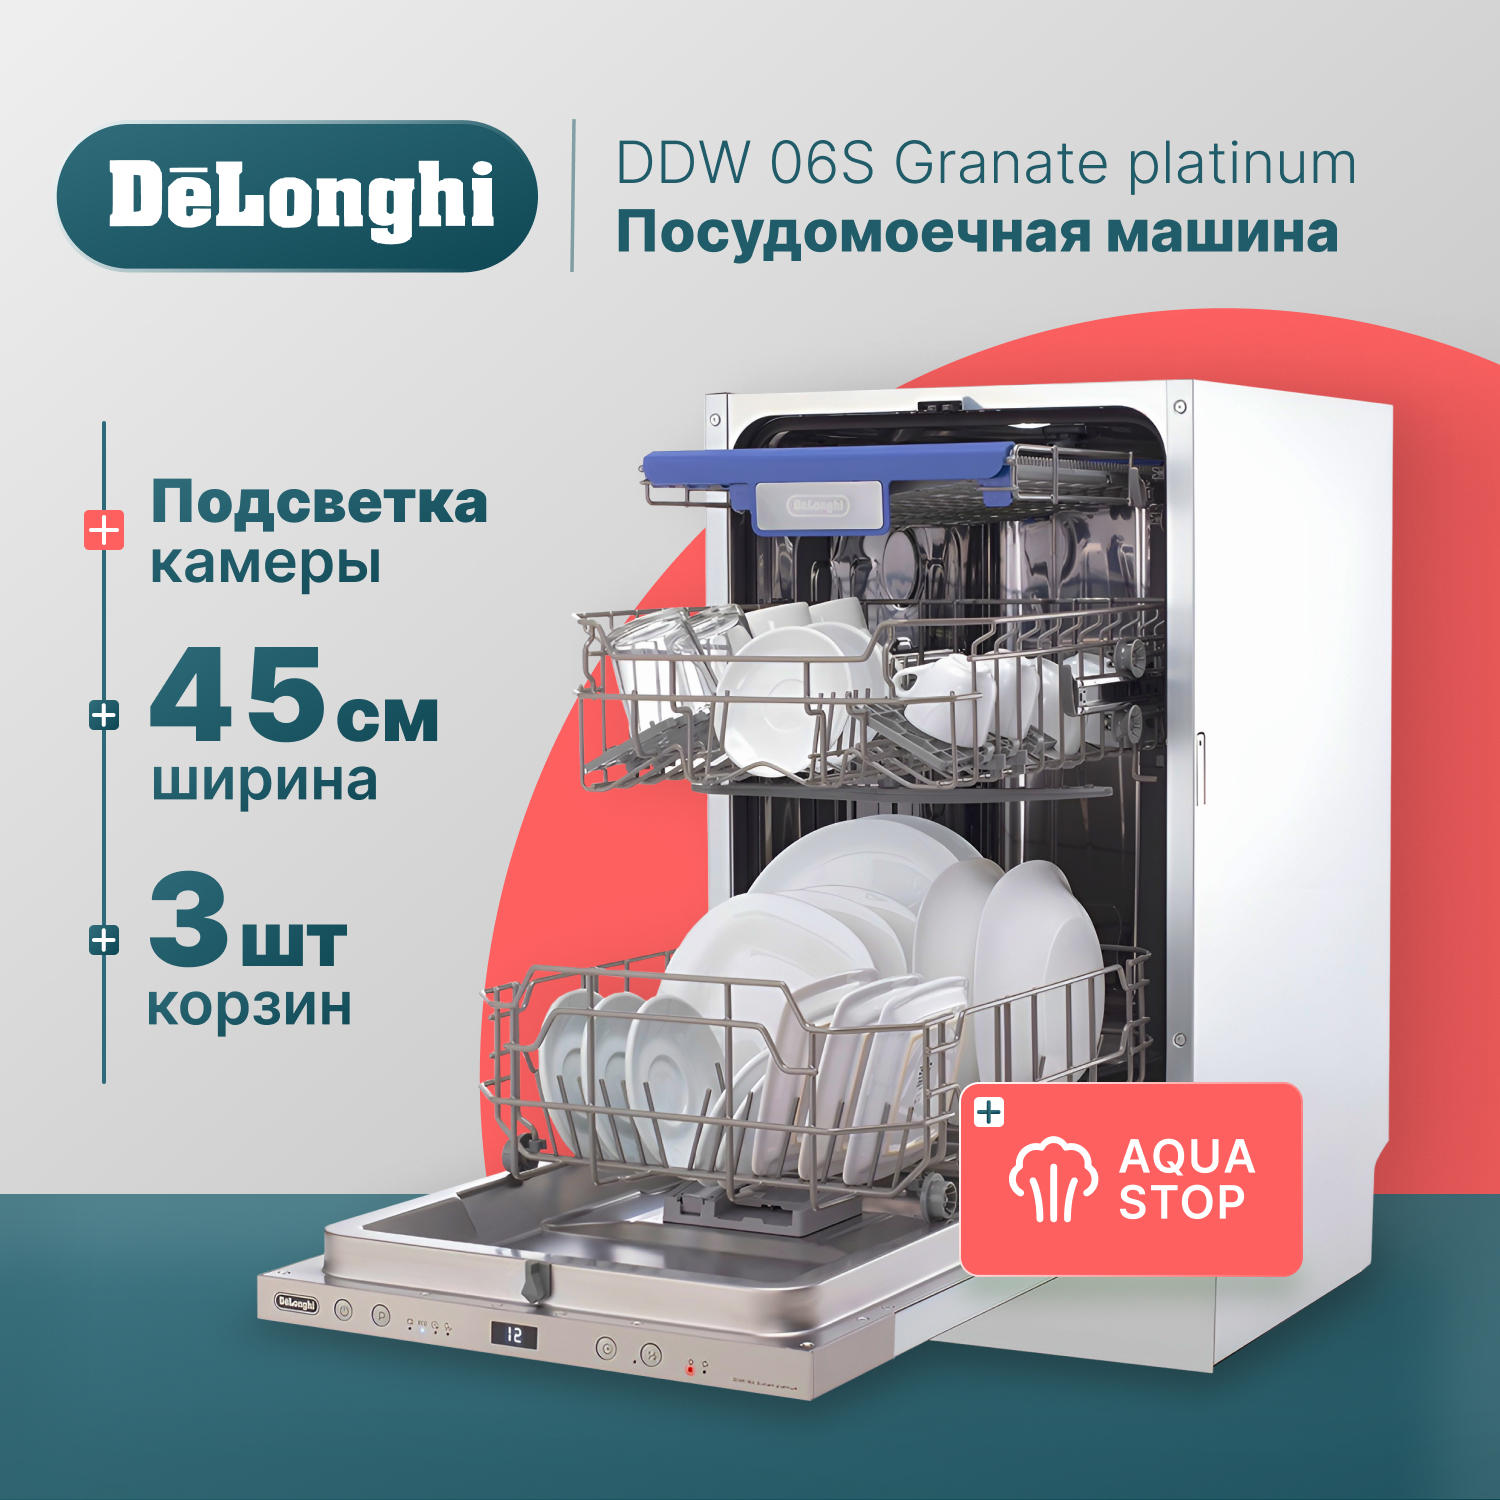 Встраиваемая посудомоечная машина Delonghi DDW06S Granate platinum угловая шлифовальная машина диск фланец блокировка m14 шестигранник металл